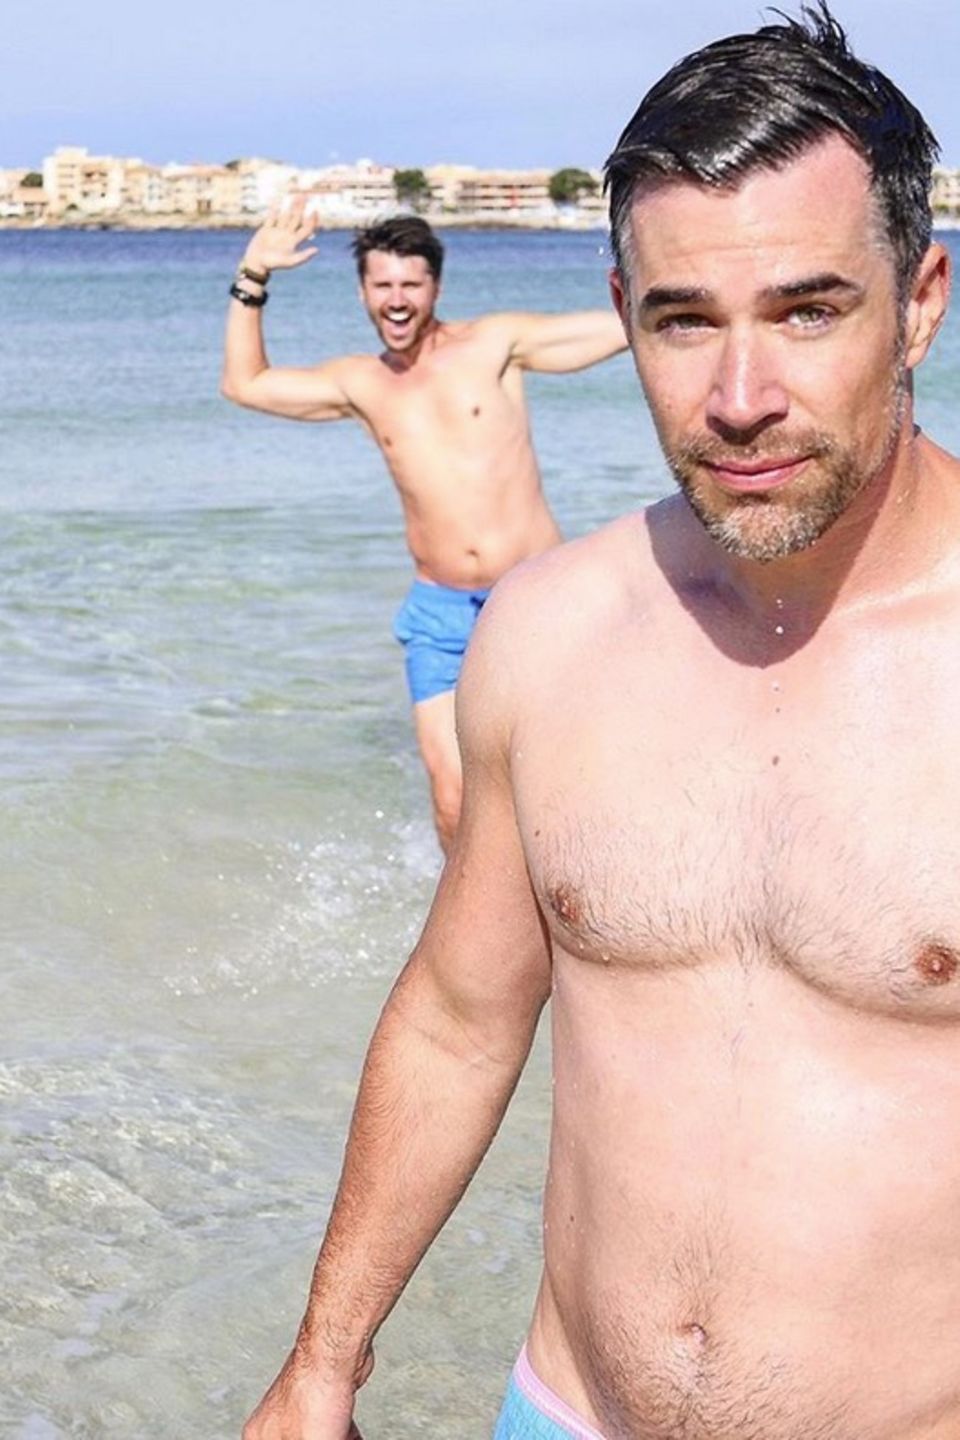 Schauspieler Jo Weil möchte am Strand von Mallorca ein schönes Selfie schießen. Schwupps, da springt Thore Schölermann im Hintergrund ins Bild. Ob Jo davon so begeistert ist?